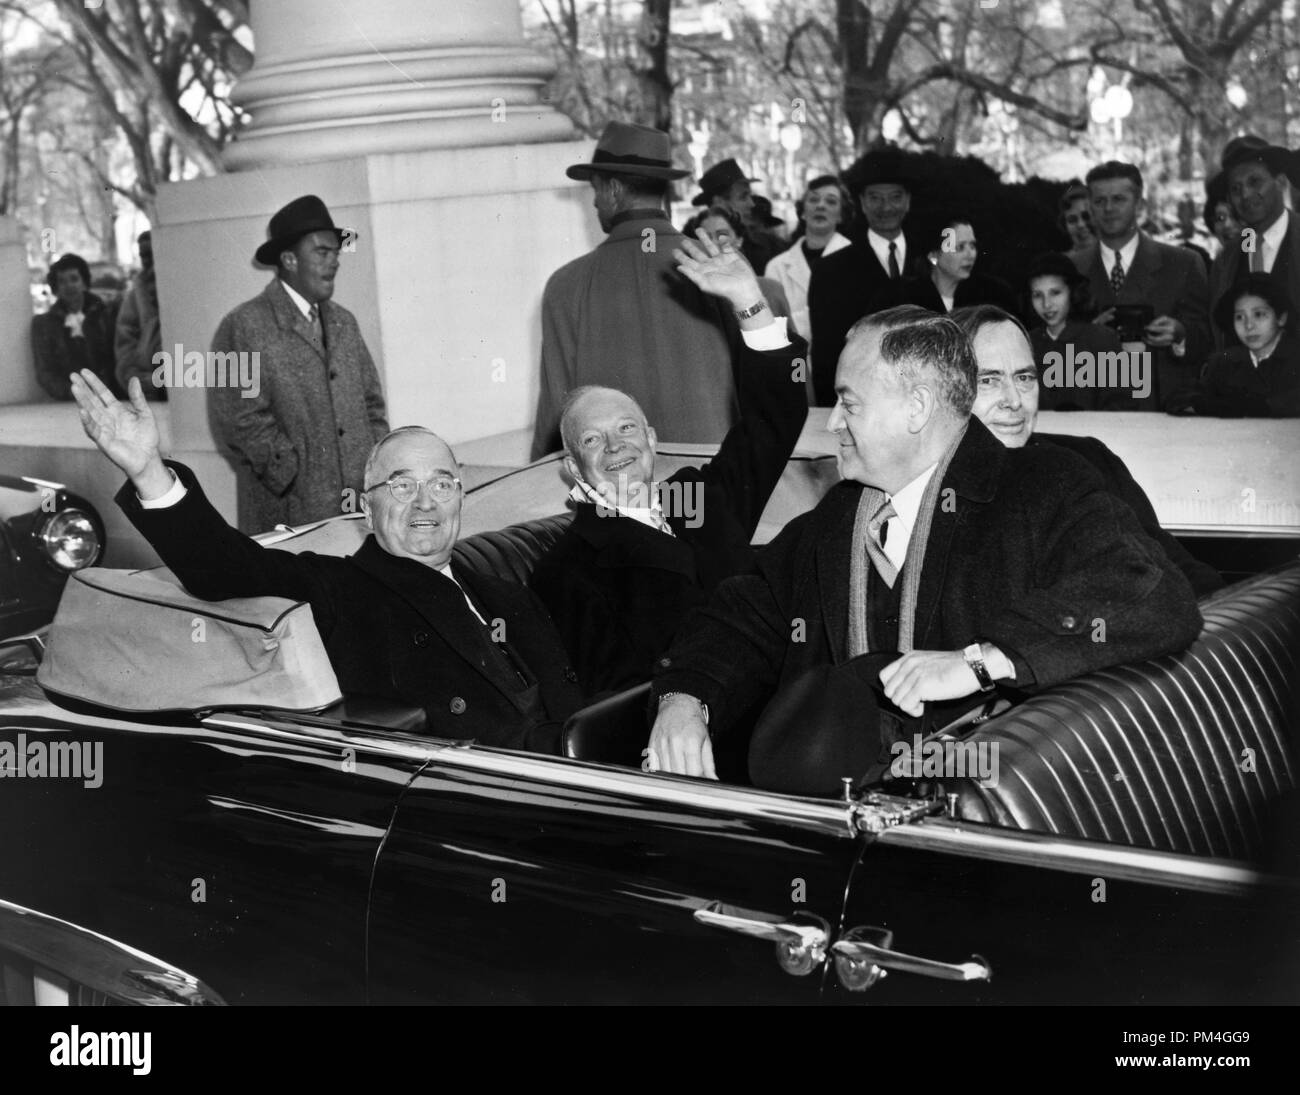 Mit einem Lächeln und einem Winken, Präsident Harry S. Truman und seinen Nachfolger Dwight D. Eisenhower, lassen Sie das Weiße Haus in einem offenen Wagen auf dem Weg zum Capitol für Einweihung Zeremonien, 20. Januar 1953. Datei Referenz Nr. 1003 008 THA Stockfoto